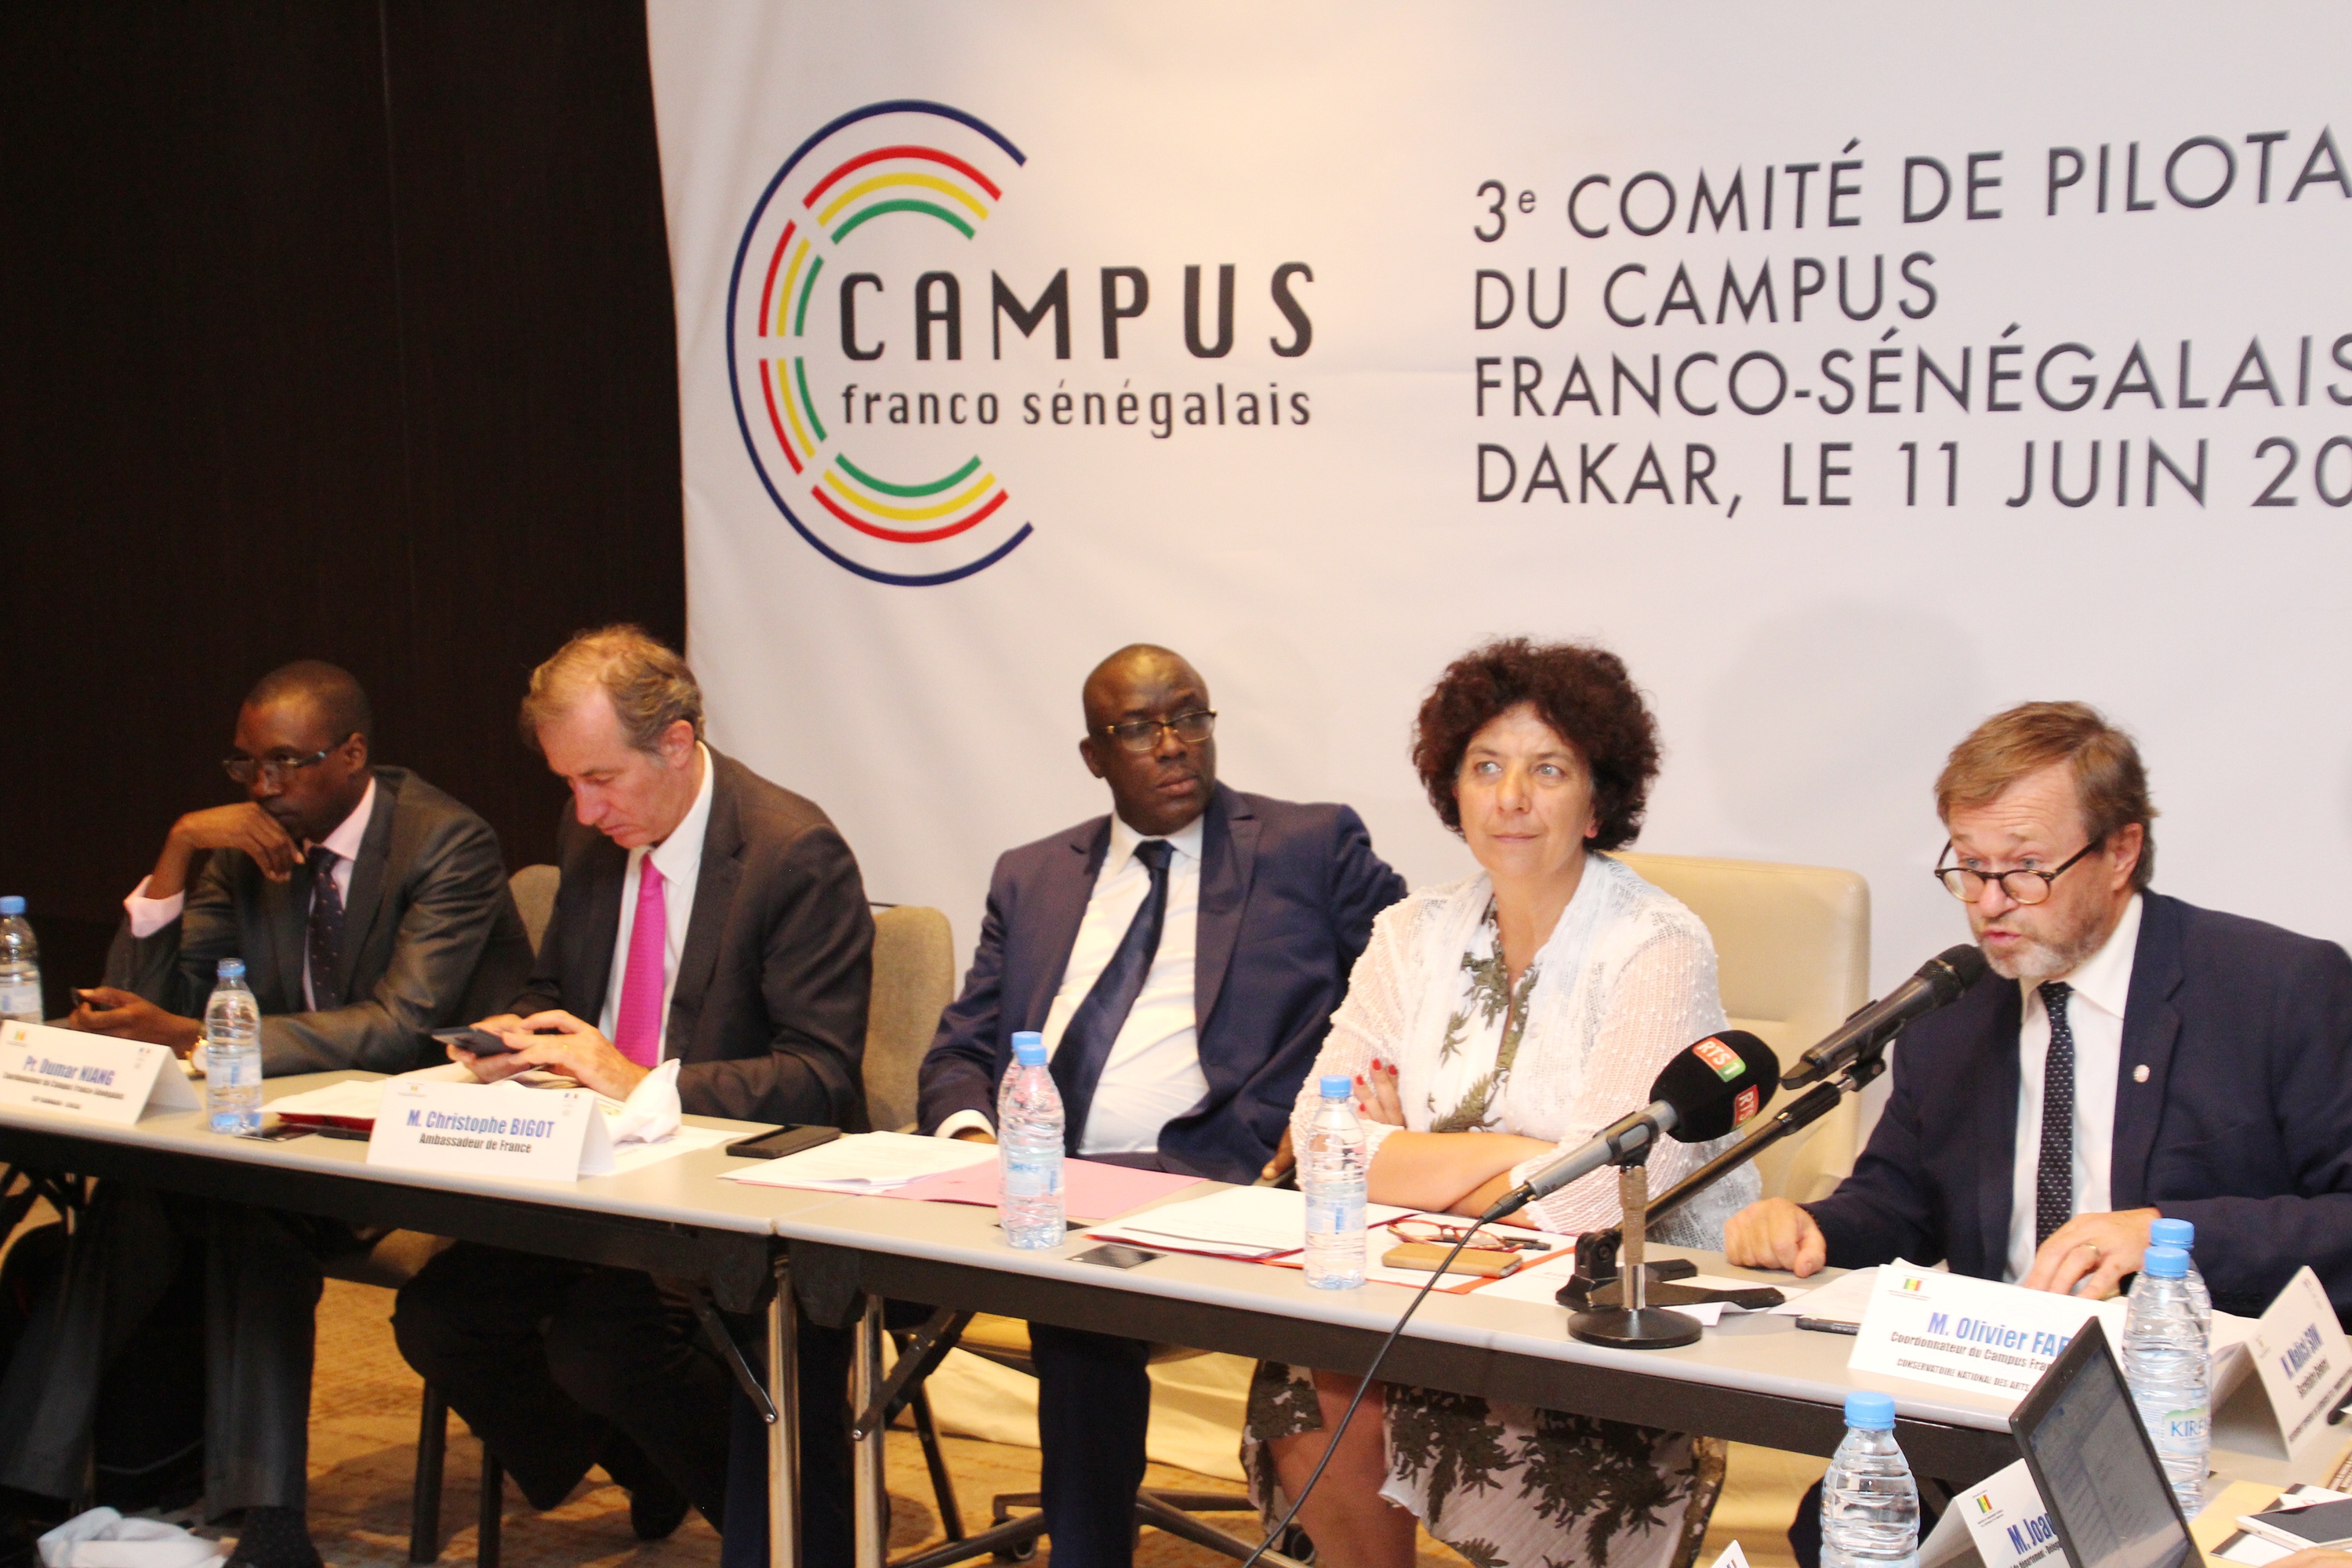 3e comité de pilotage Campus Franco-Sénégalais: lancement officiel  et communication au menu de la rencontre